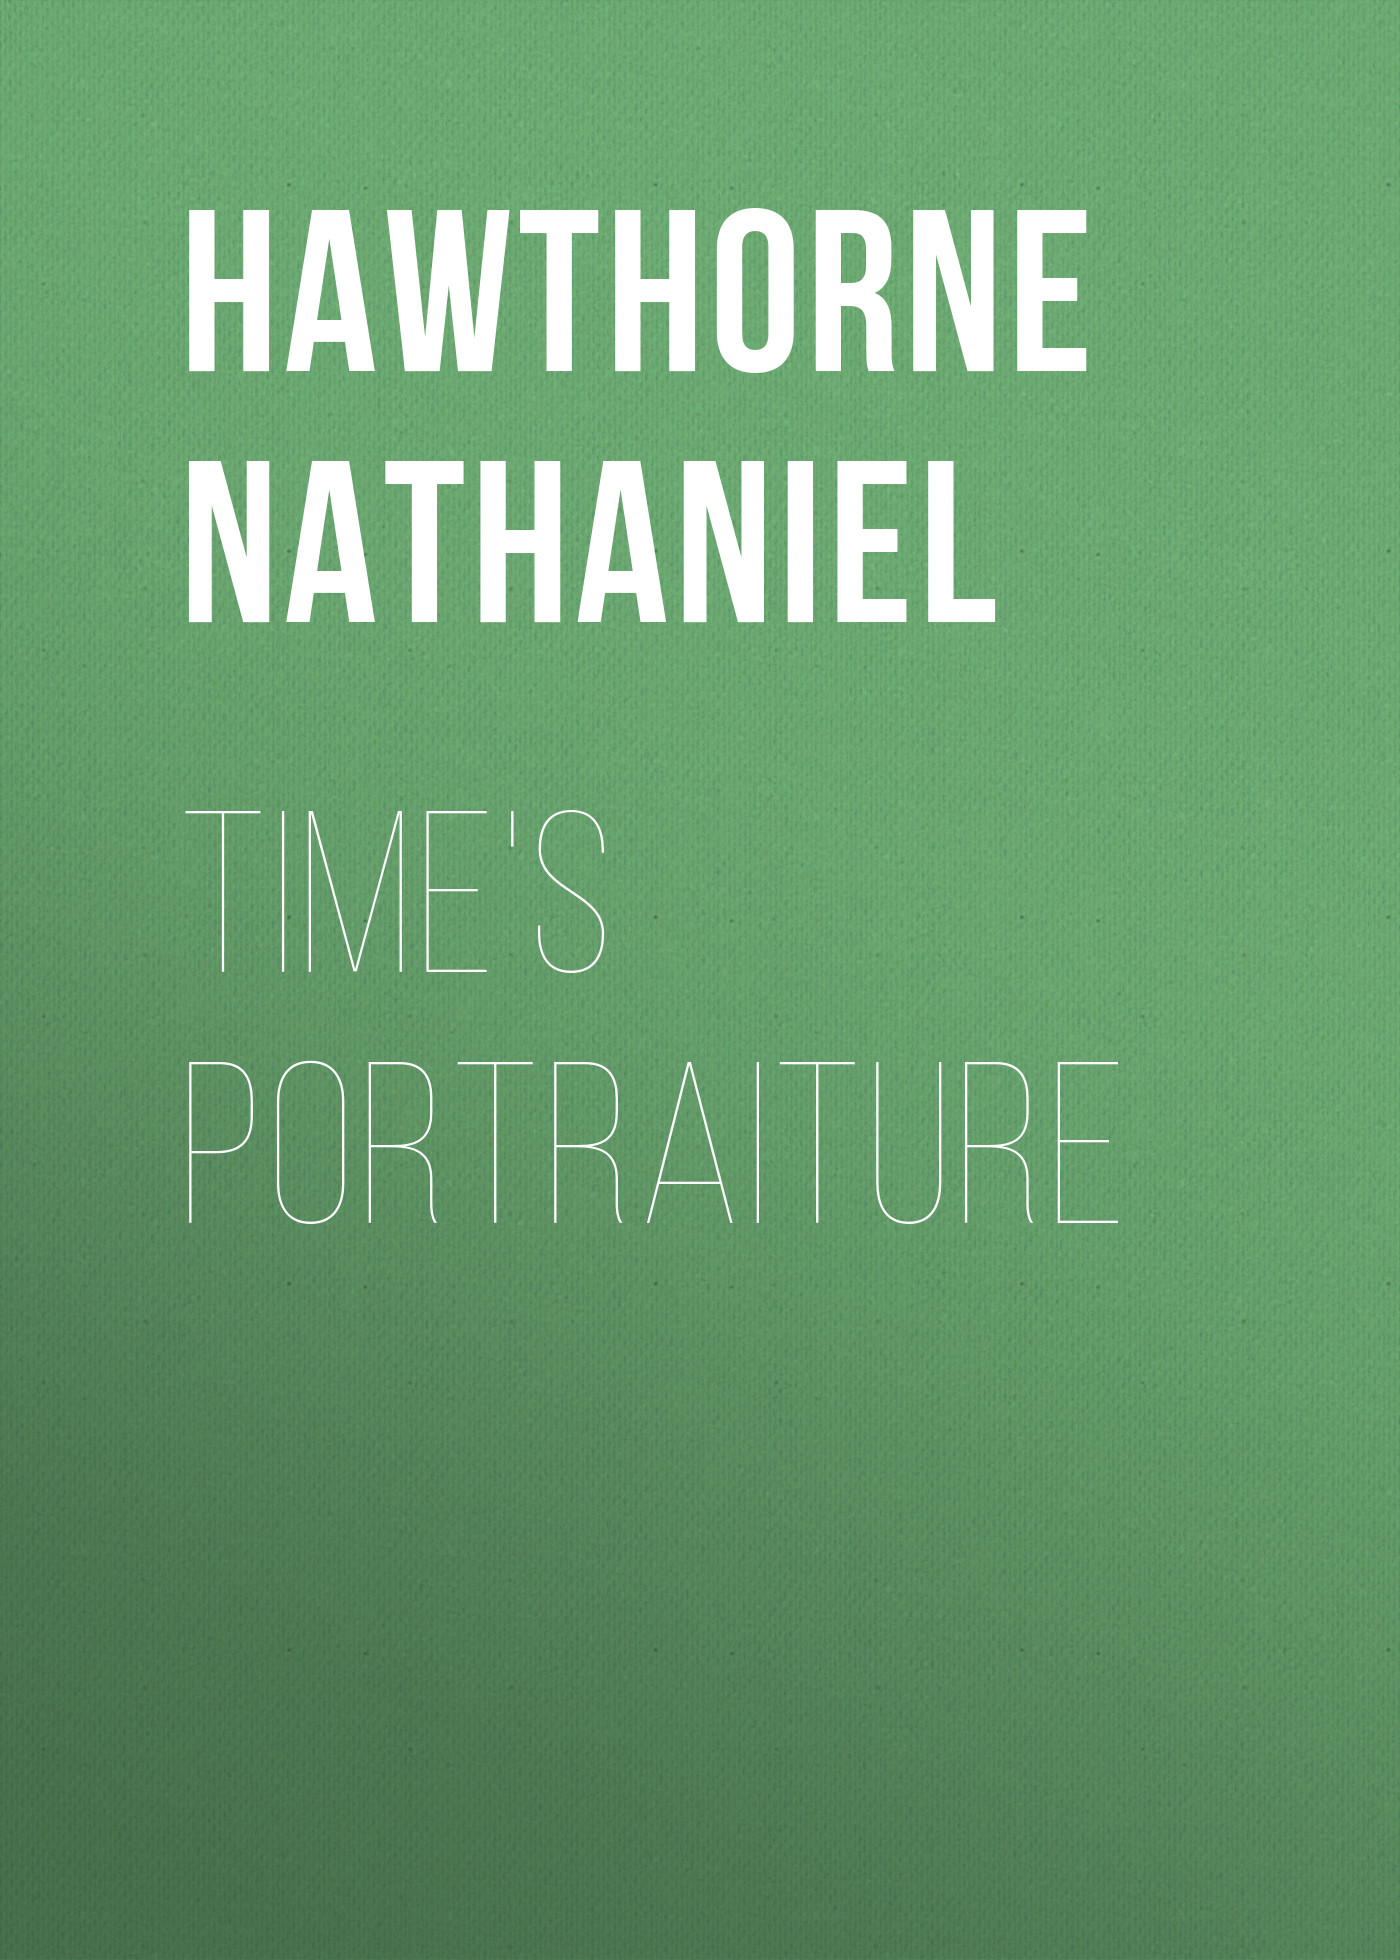 Книга Time's Portraiture из серии , созданная Nathaniel Hawthorne, может относится к жанру Литература 19 века, Зарубежная старинная литература, Зарубежная классика. Стоимость электронной книги Time's Portraiture с идентификатором 25561508 составляет 0 руб.